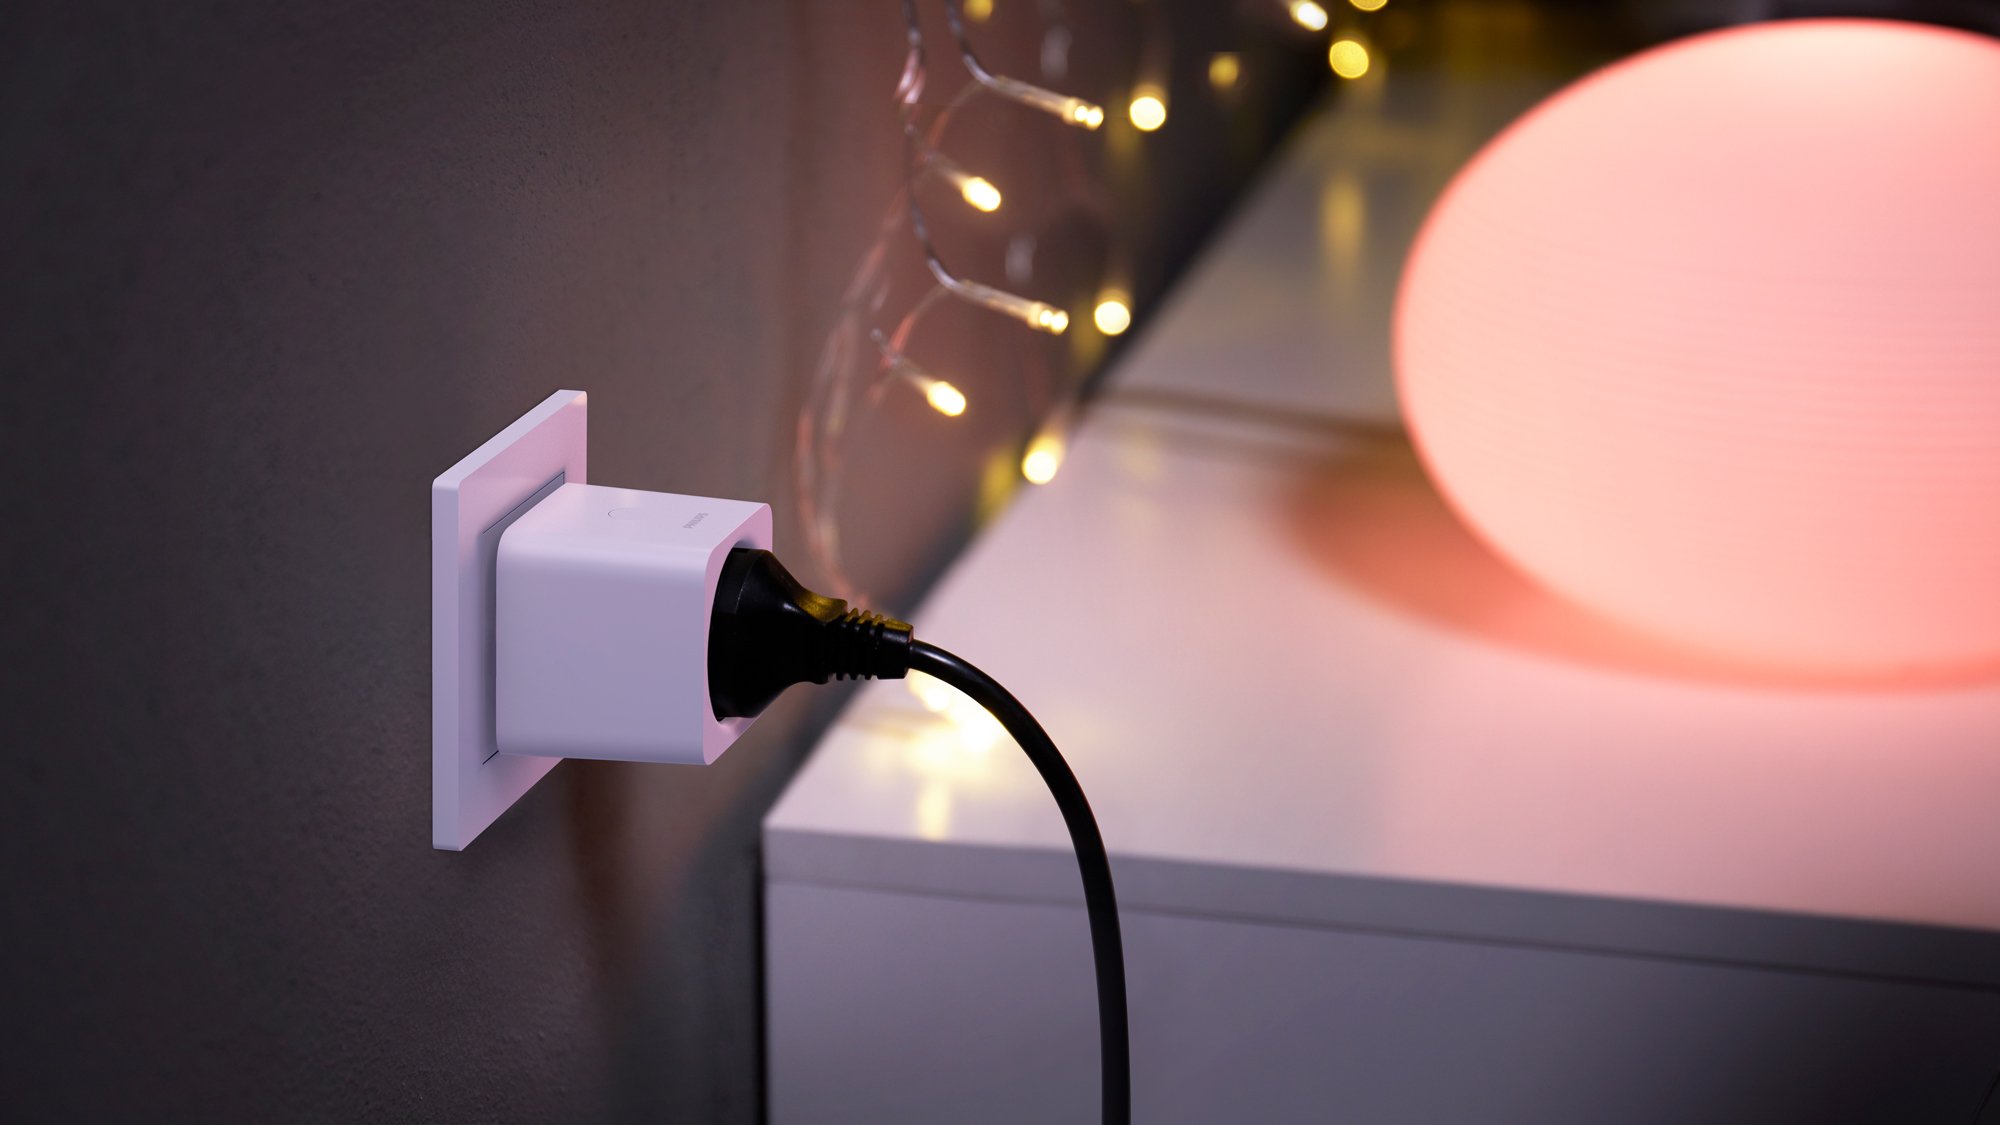 Mit der Philips Hue Smart Plug kann jede Lampe zur smarten Hue-Lampe gemacht werden.